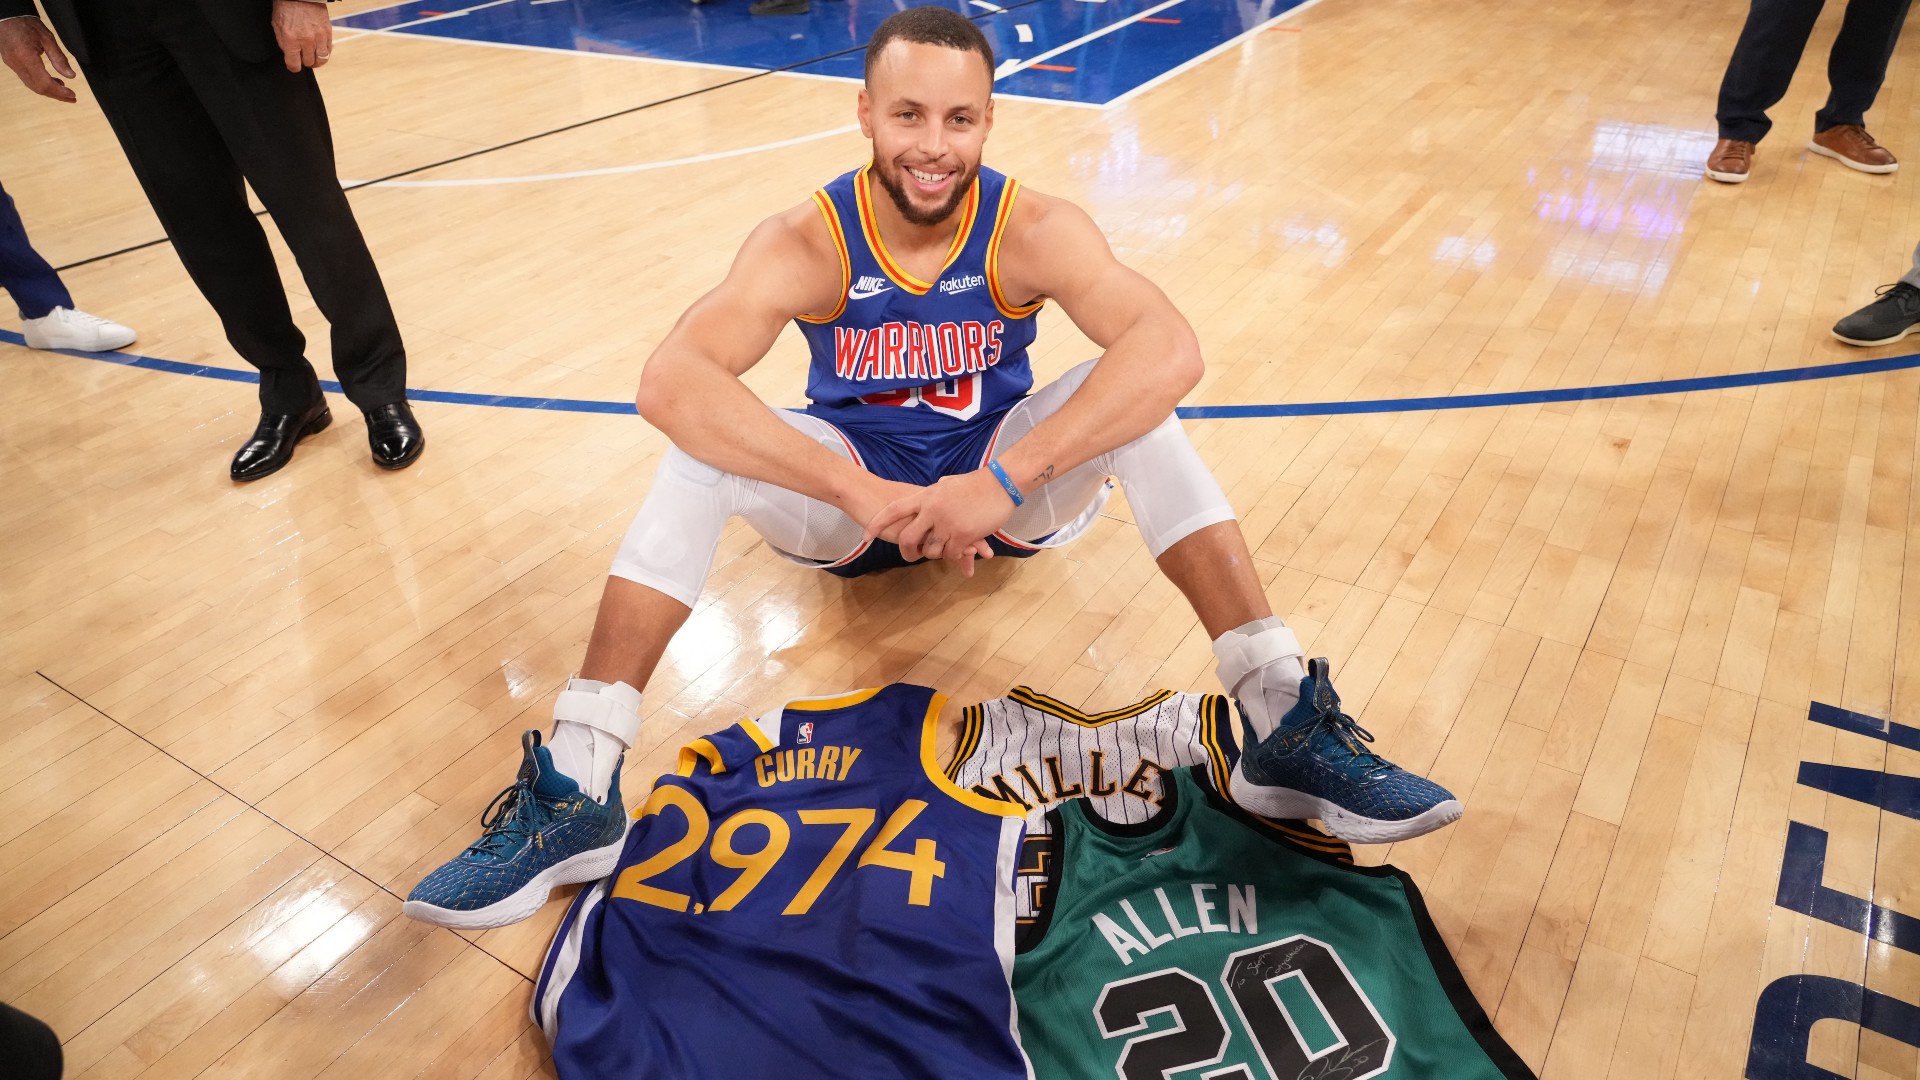 Amikor az egész csarnok az ellenfél játékosát ünnepli: Steph Curry lett az NBA triplakirálya